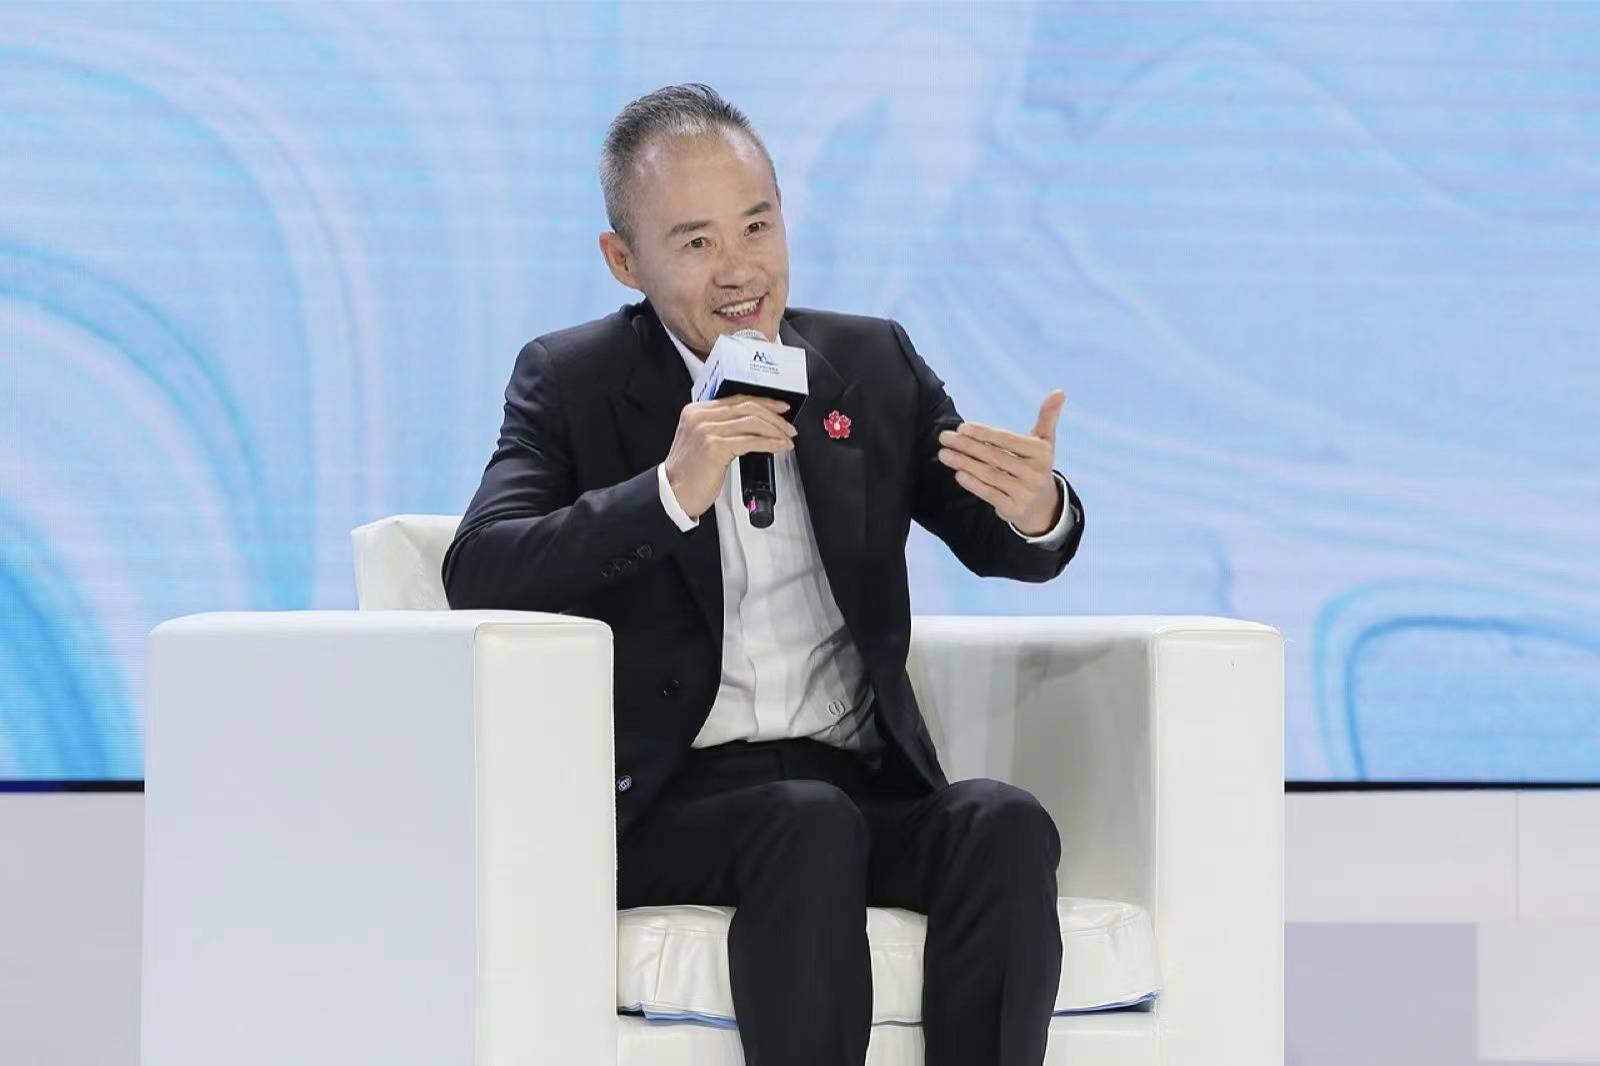 万科王石做客互联网公益峰会,称99公益日已成为国际震惊的"中国特产"